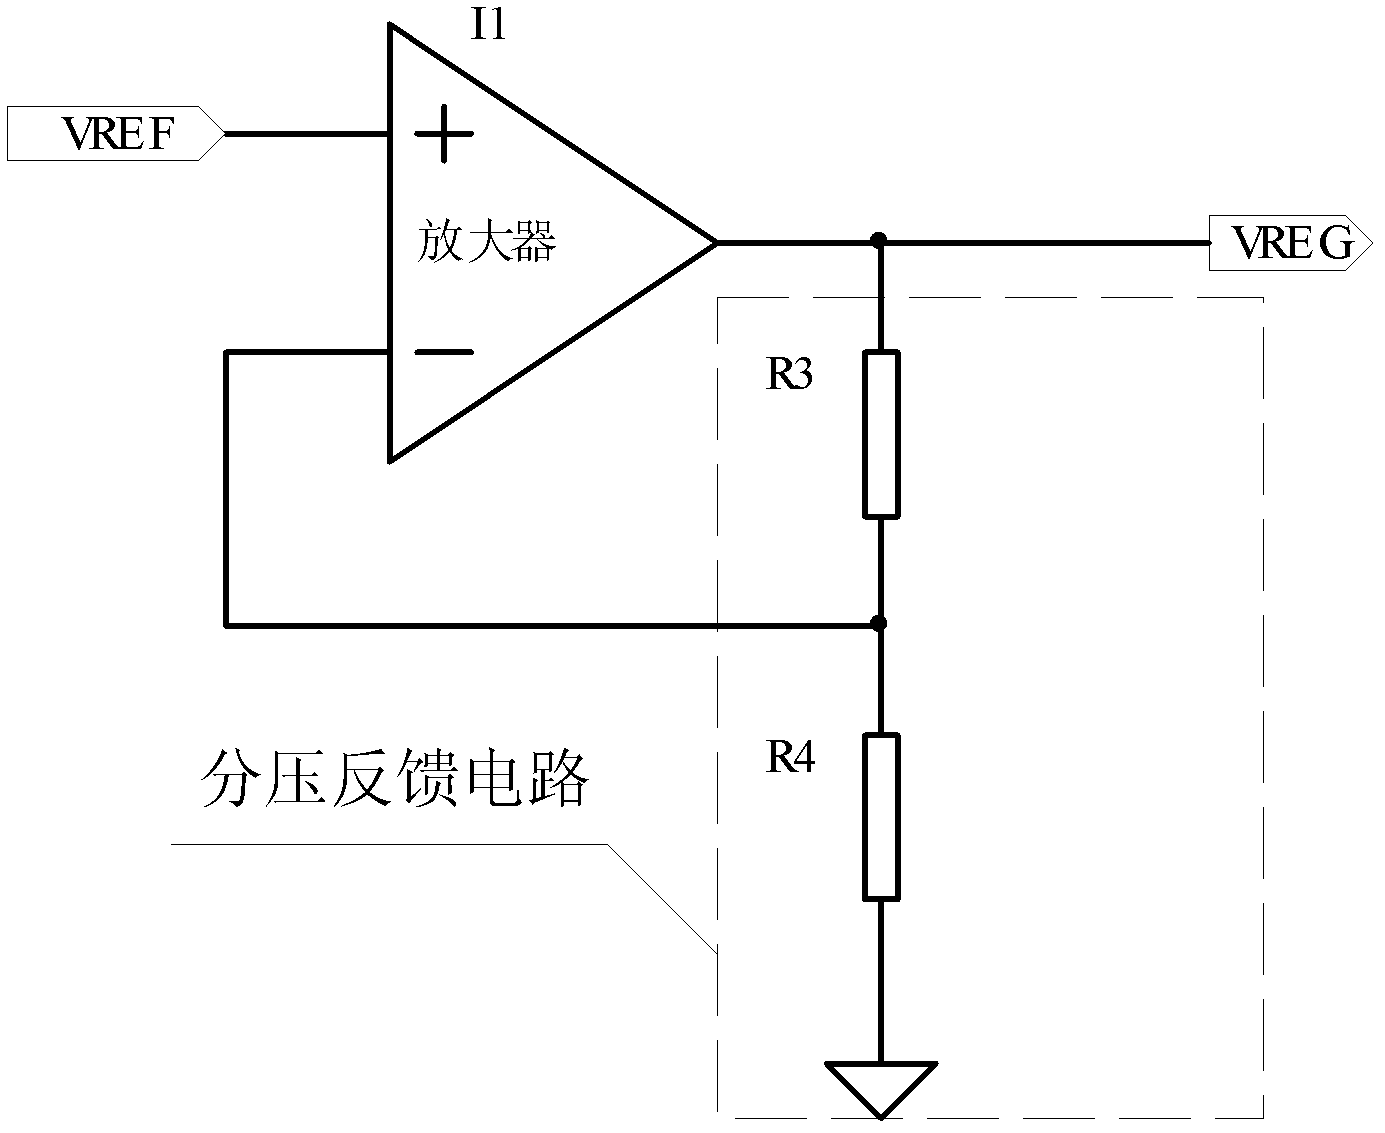 Oscillator circuit structure